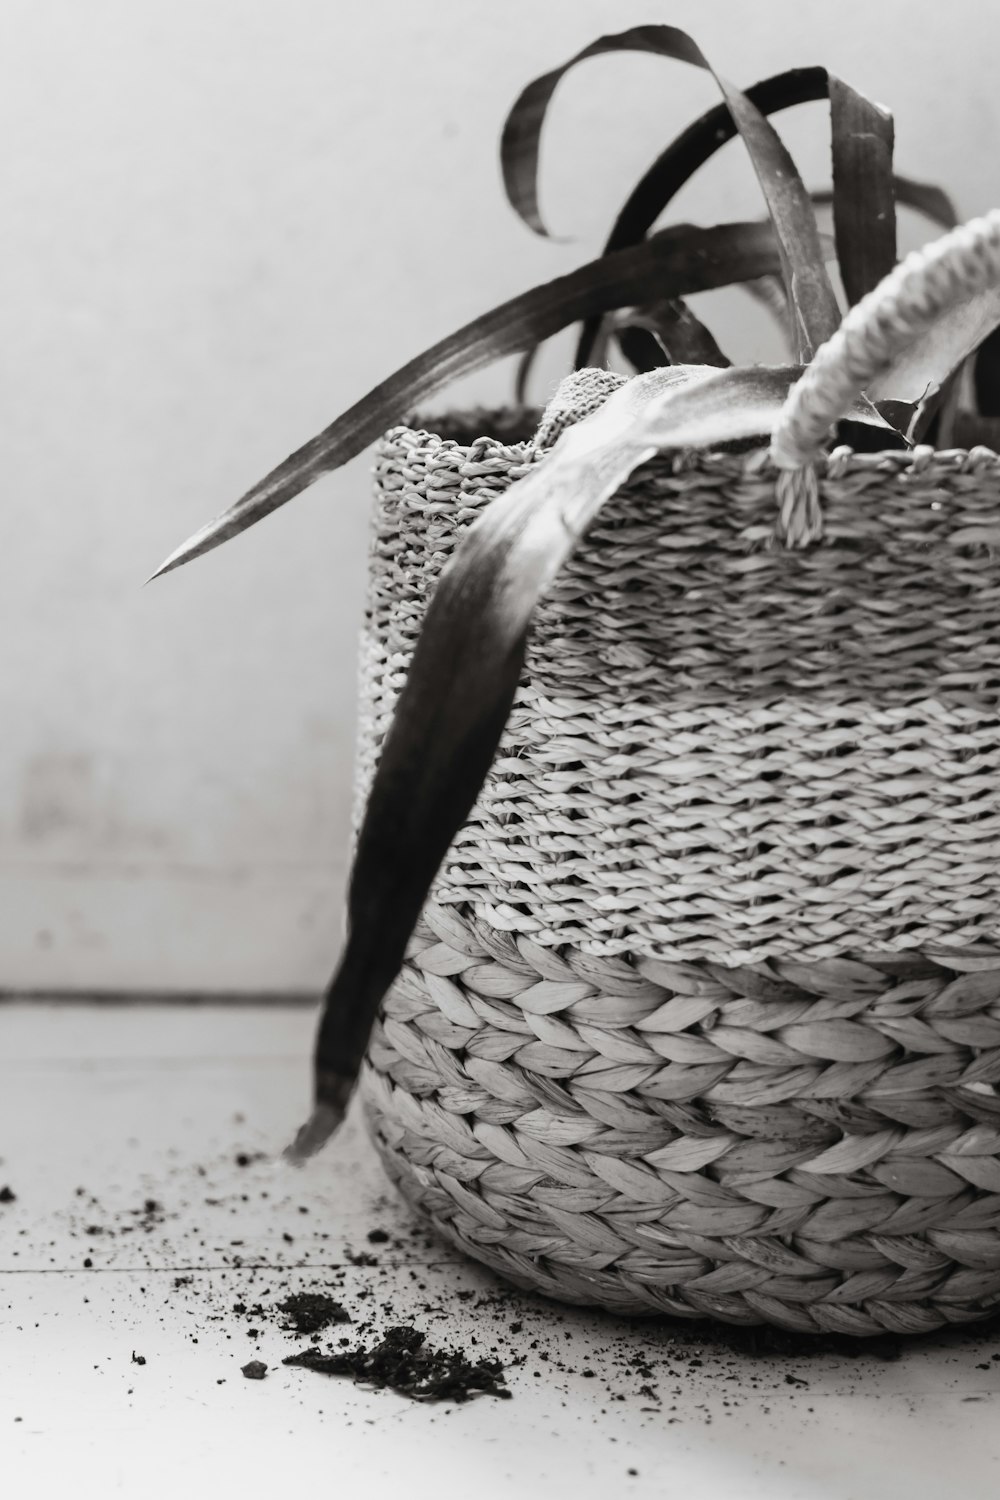 a bird sitting on a basket